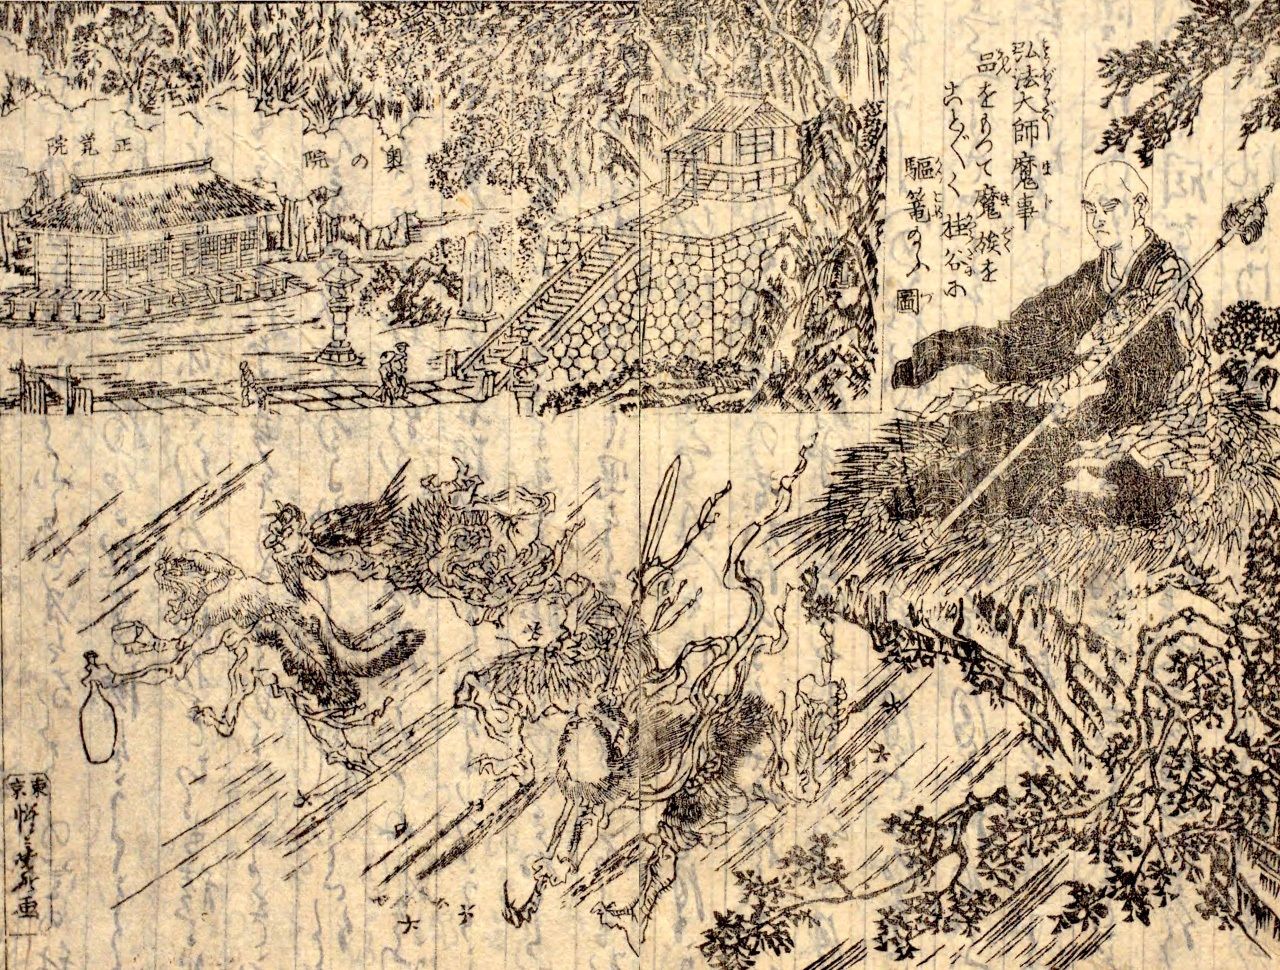 桂谷の魔物を退治する空海を描いた『修禅寺温泉名所記』の挿絵。空海が寺を開基した伝承にもとづいて描かれた。国立国会図書館所蔵